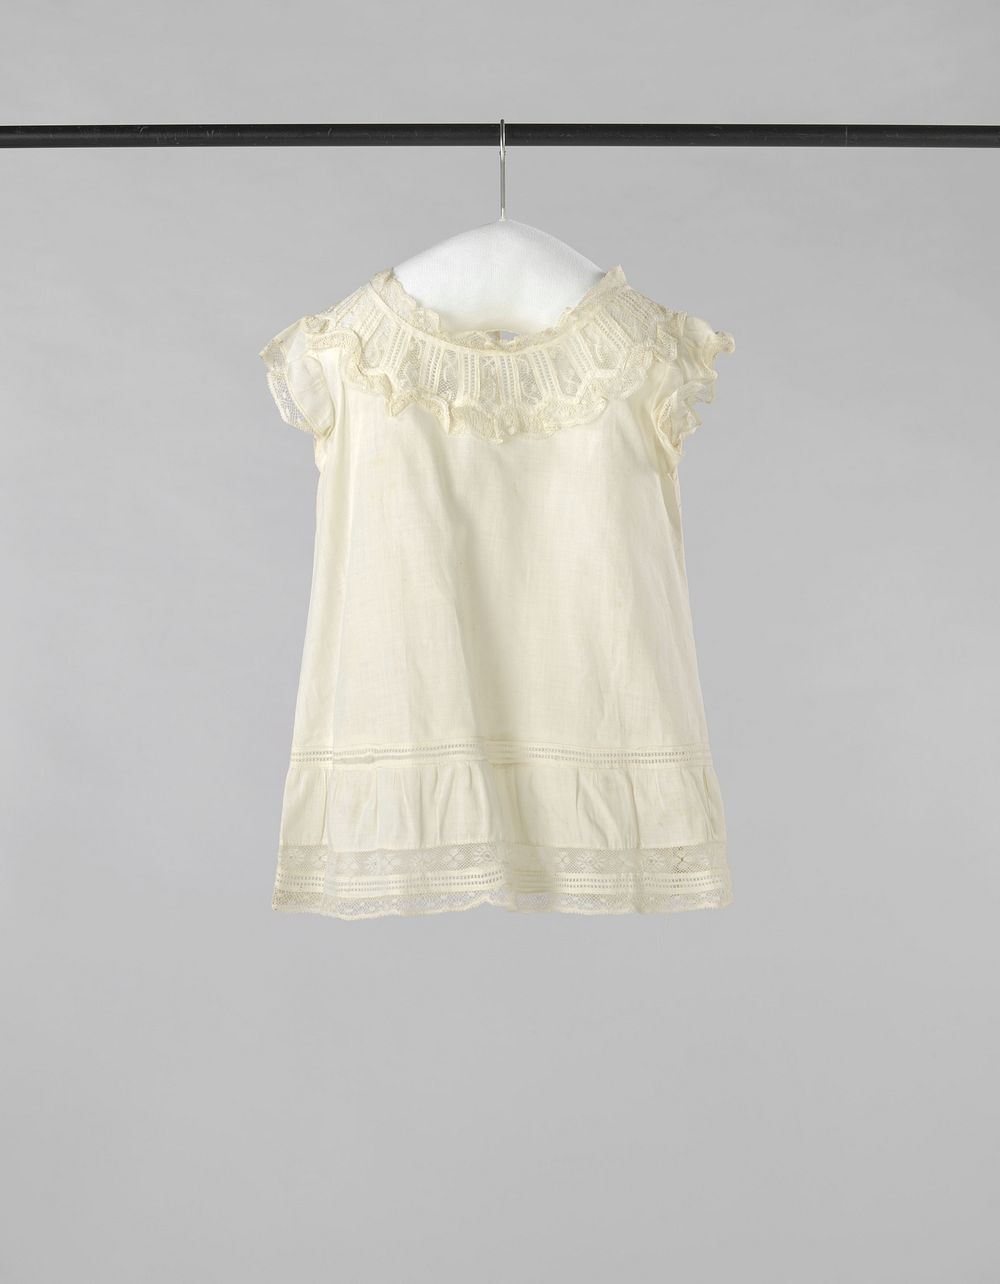 Kinderschort van dun wit katoen, langs bovenlijf, mouwkap, hals en zoom versierd met kant en met een tussenzetsel van kant…